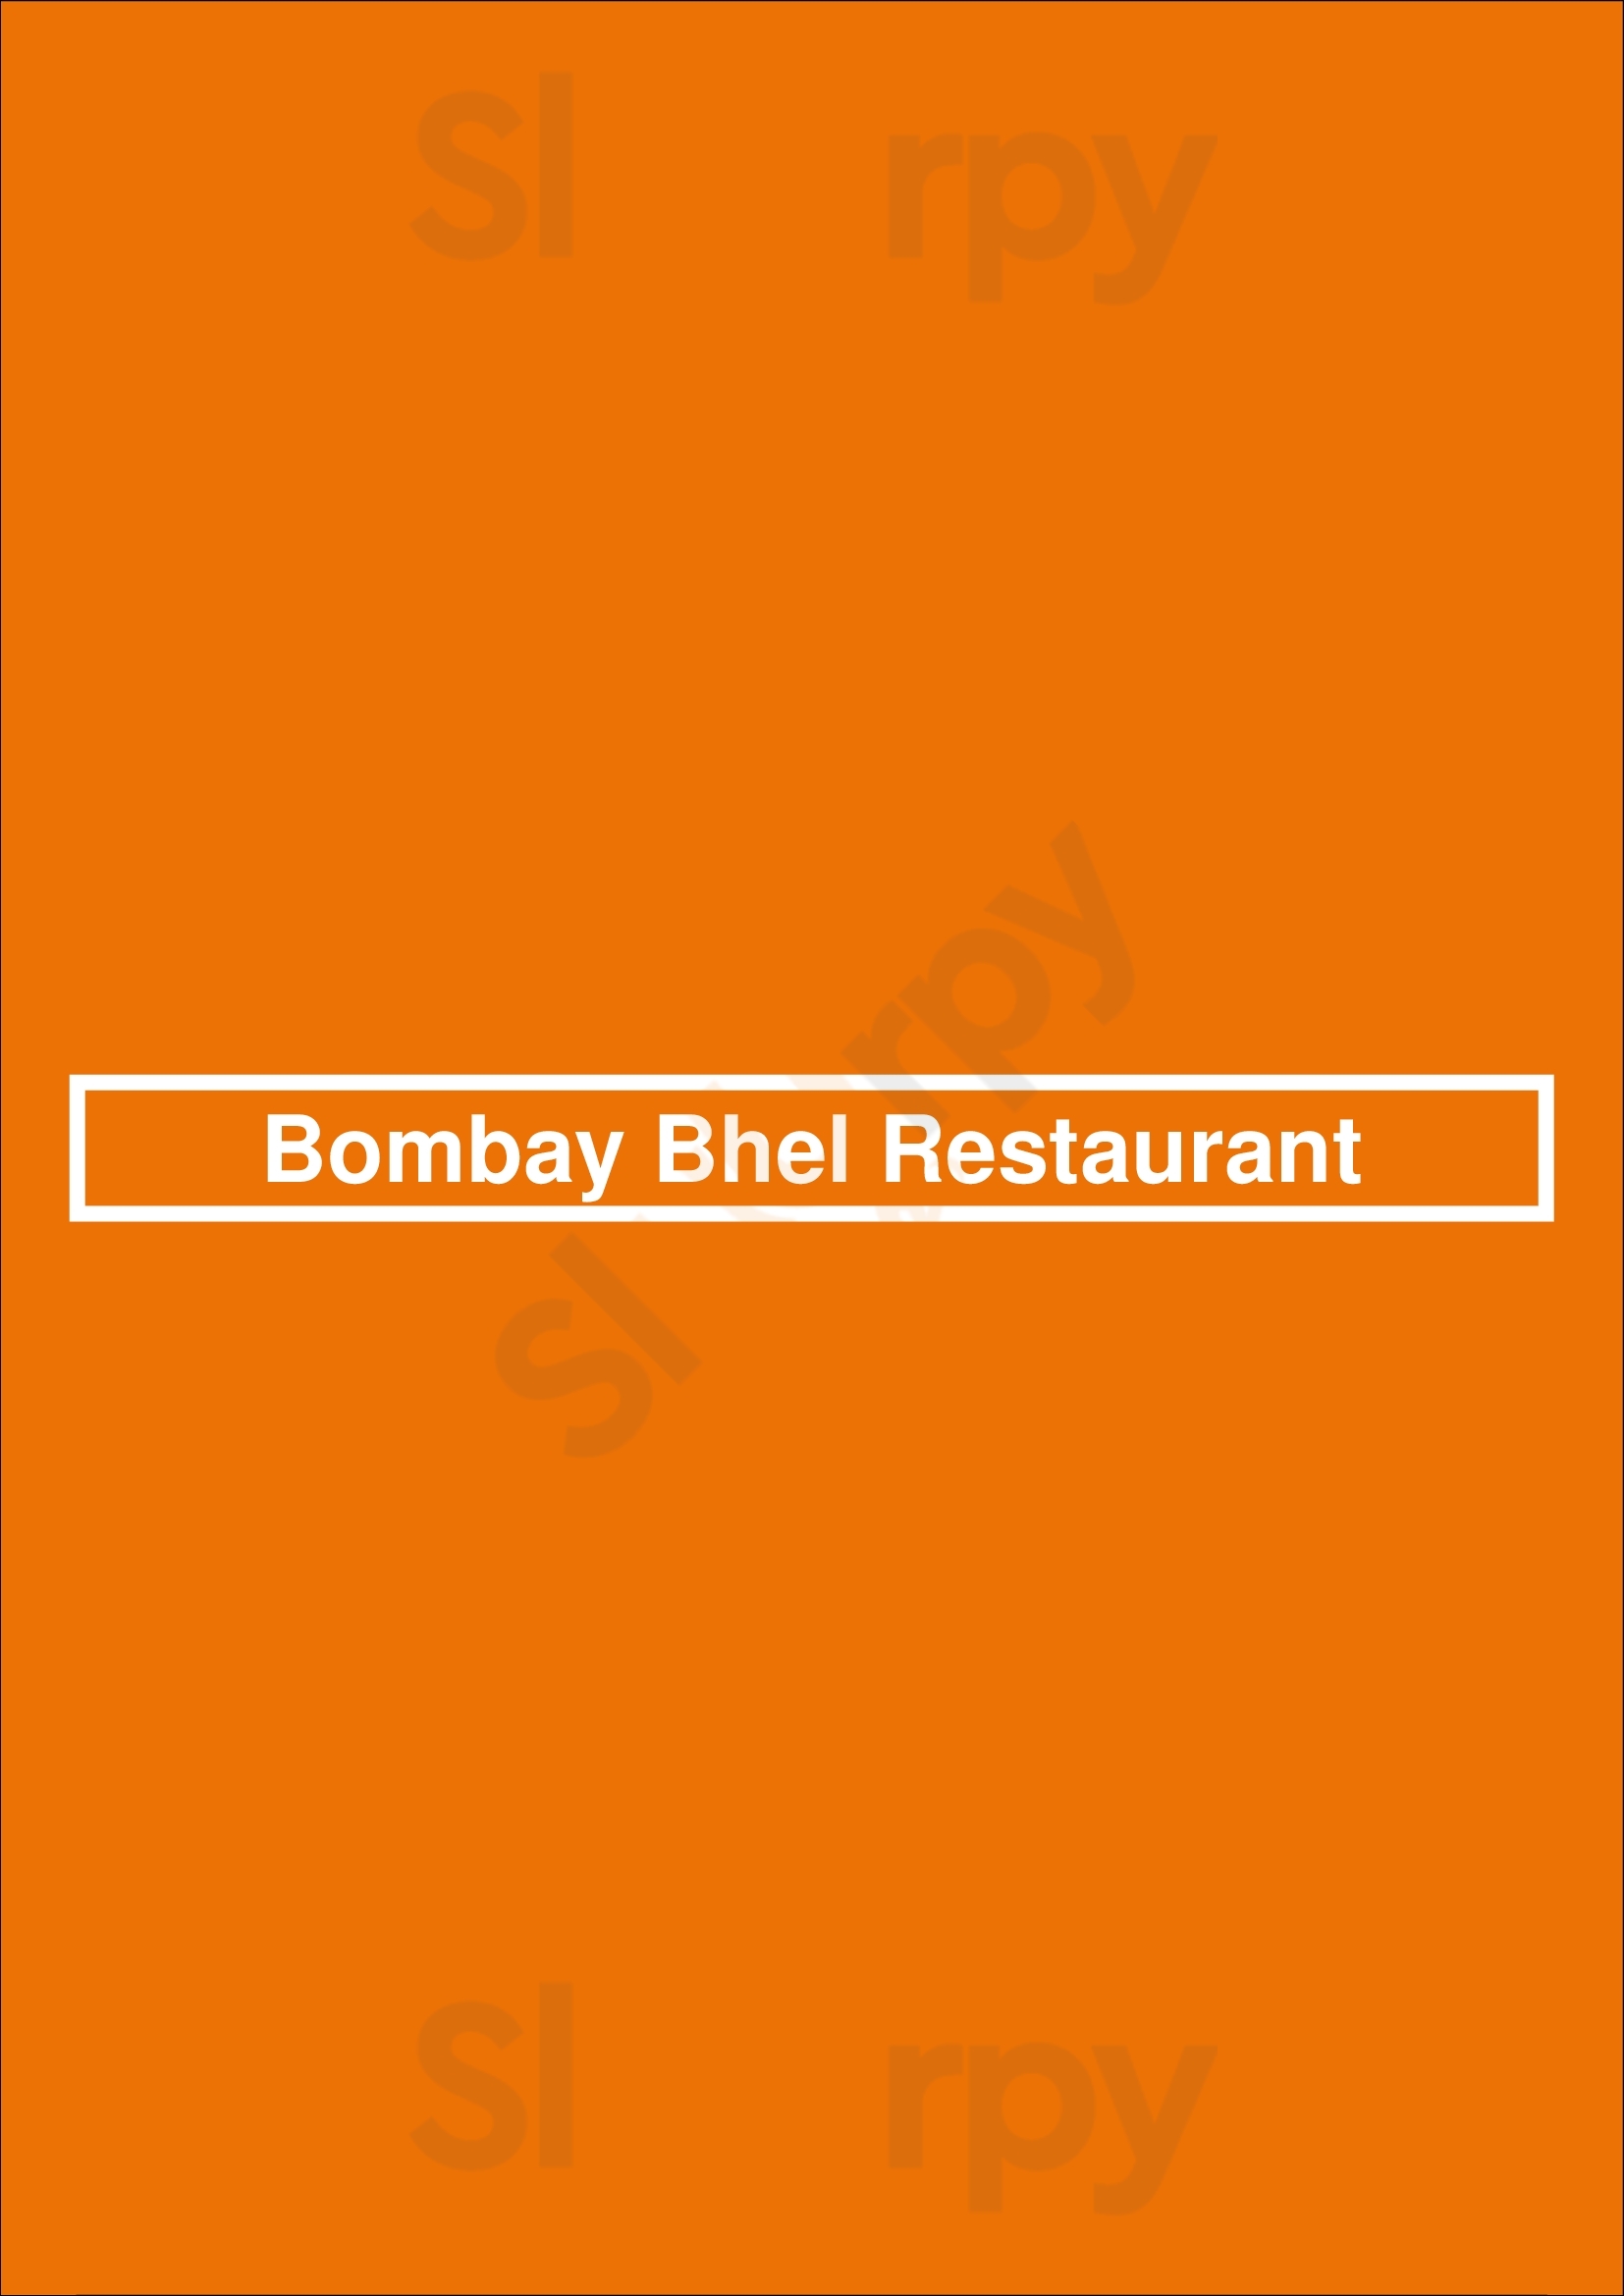 Bombay Bhel Restaurant Markham Menu - 1